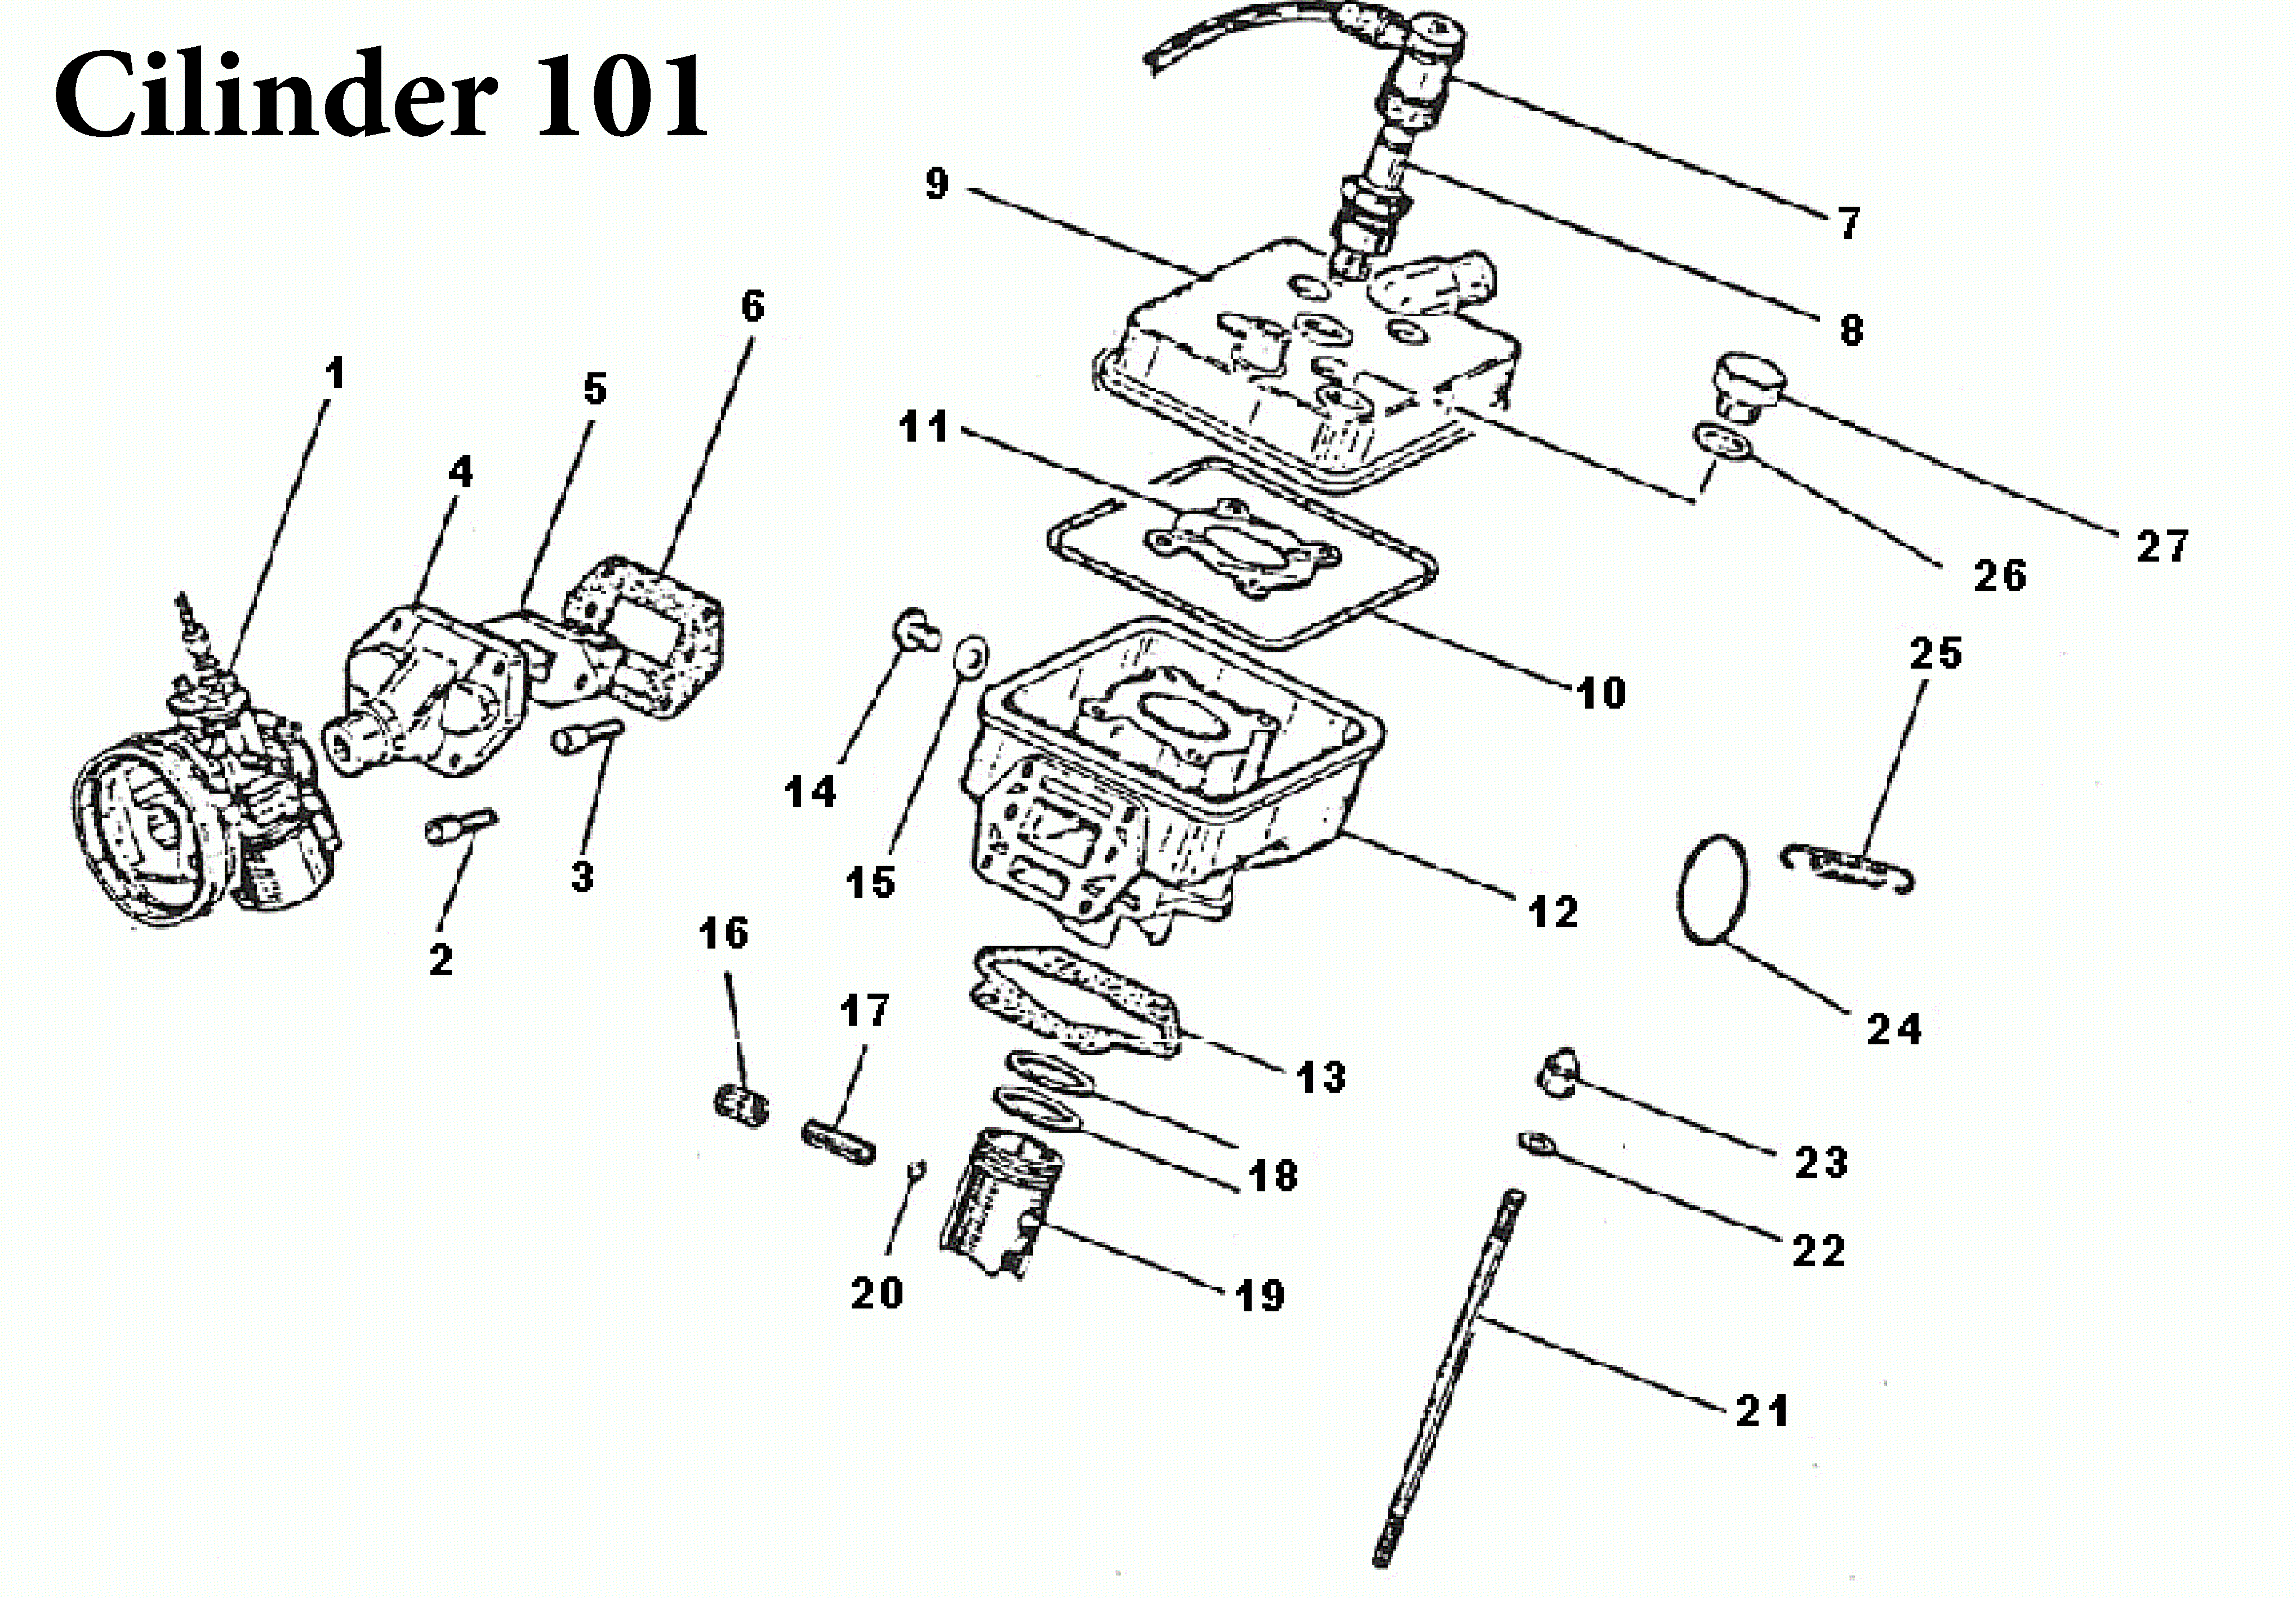 cilinder 101